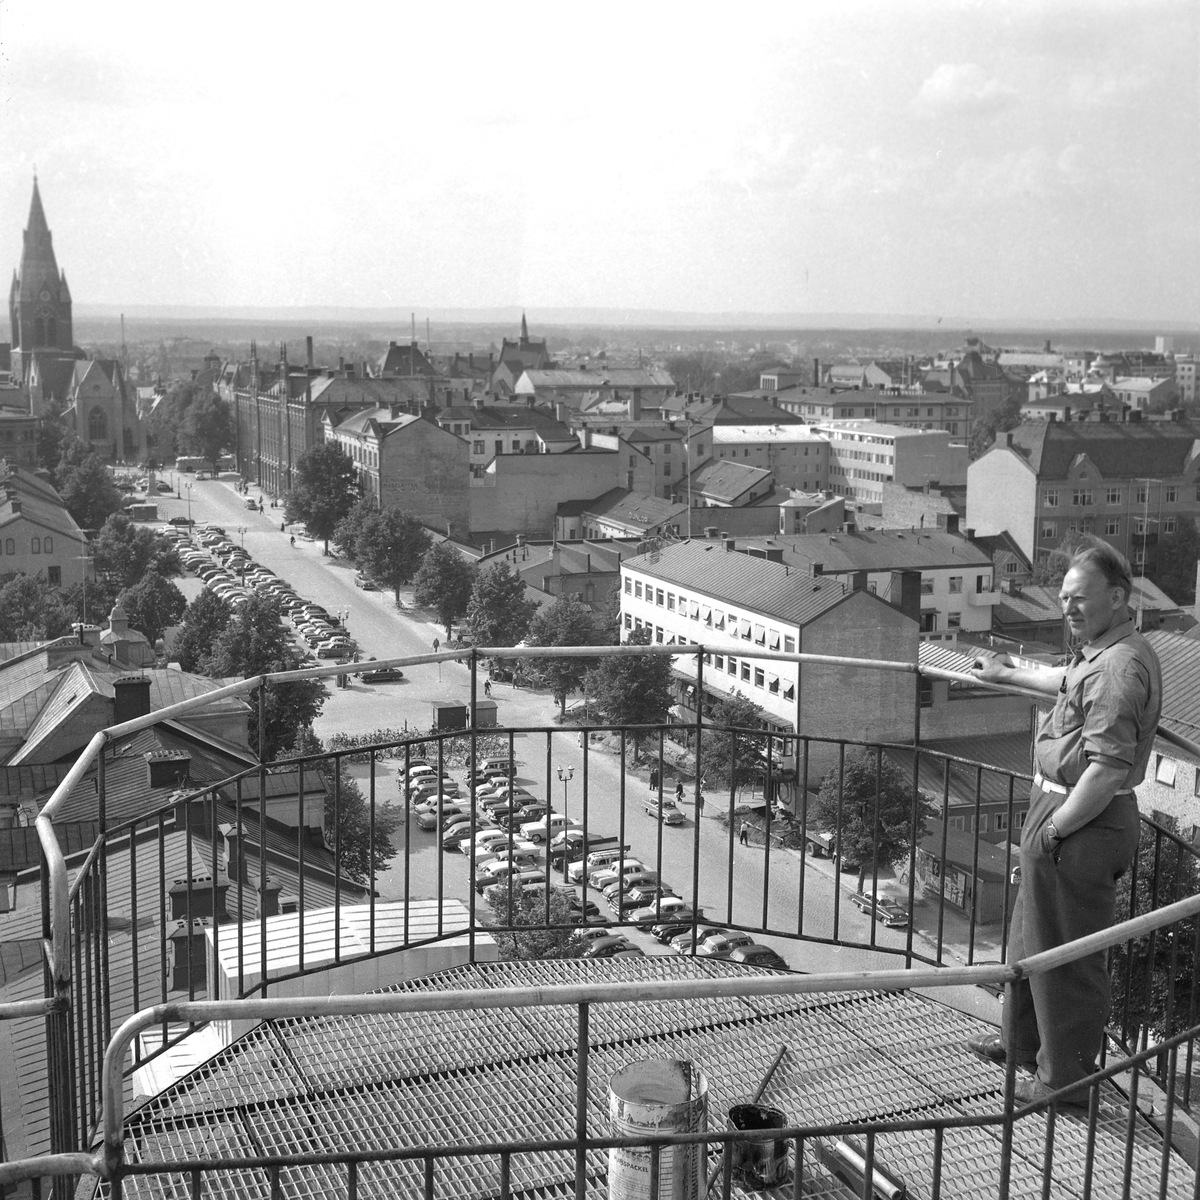 Diverse bilder, 1958.
Utsikt över Örebro, Stortorget och Nikolai kyrka.